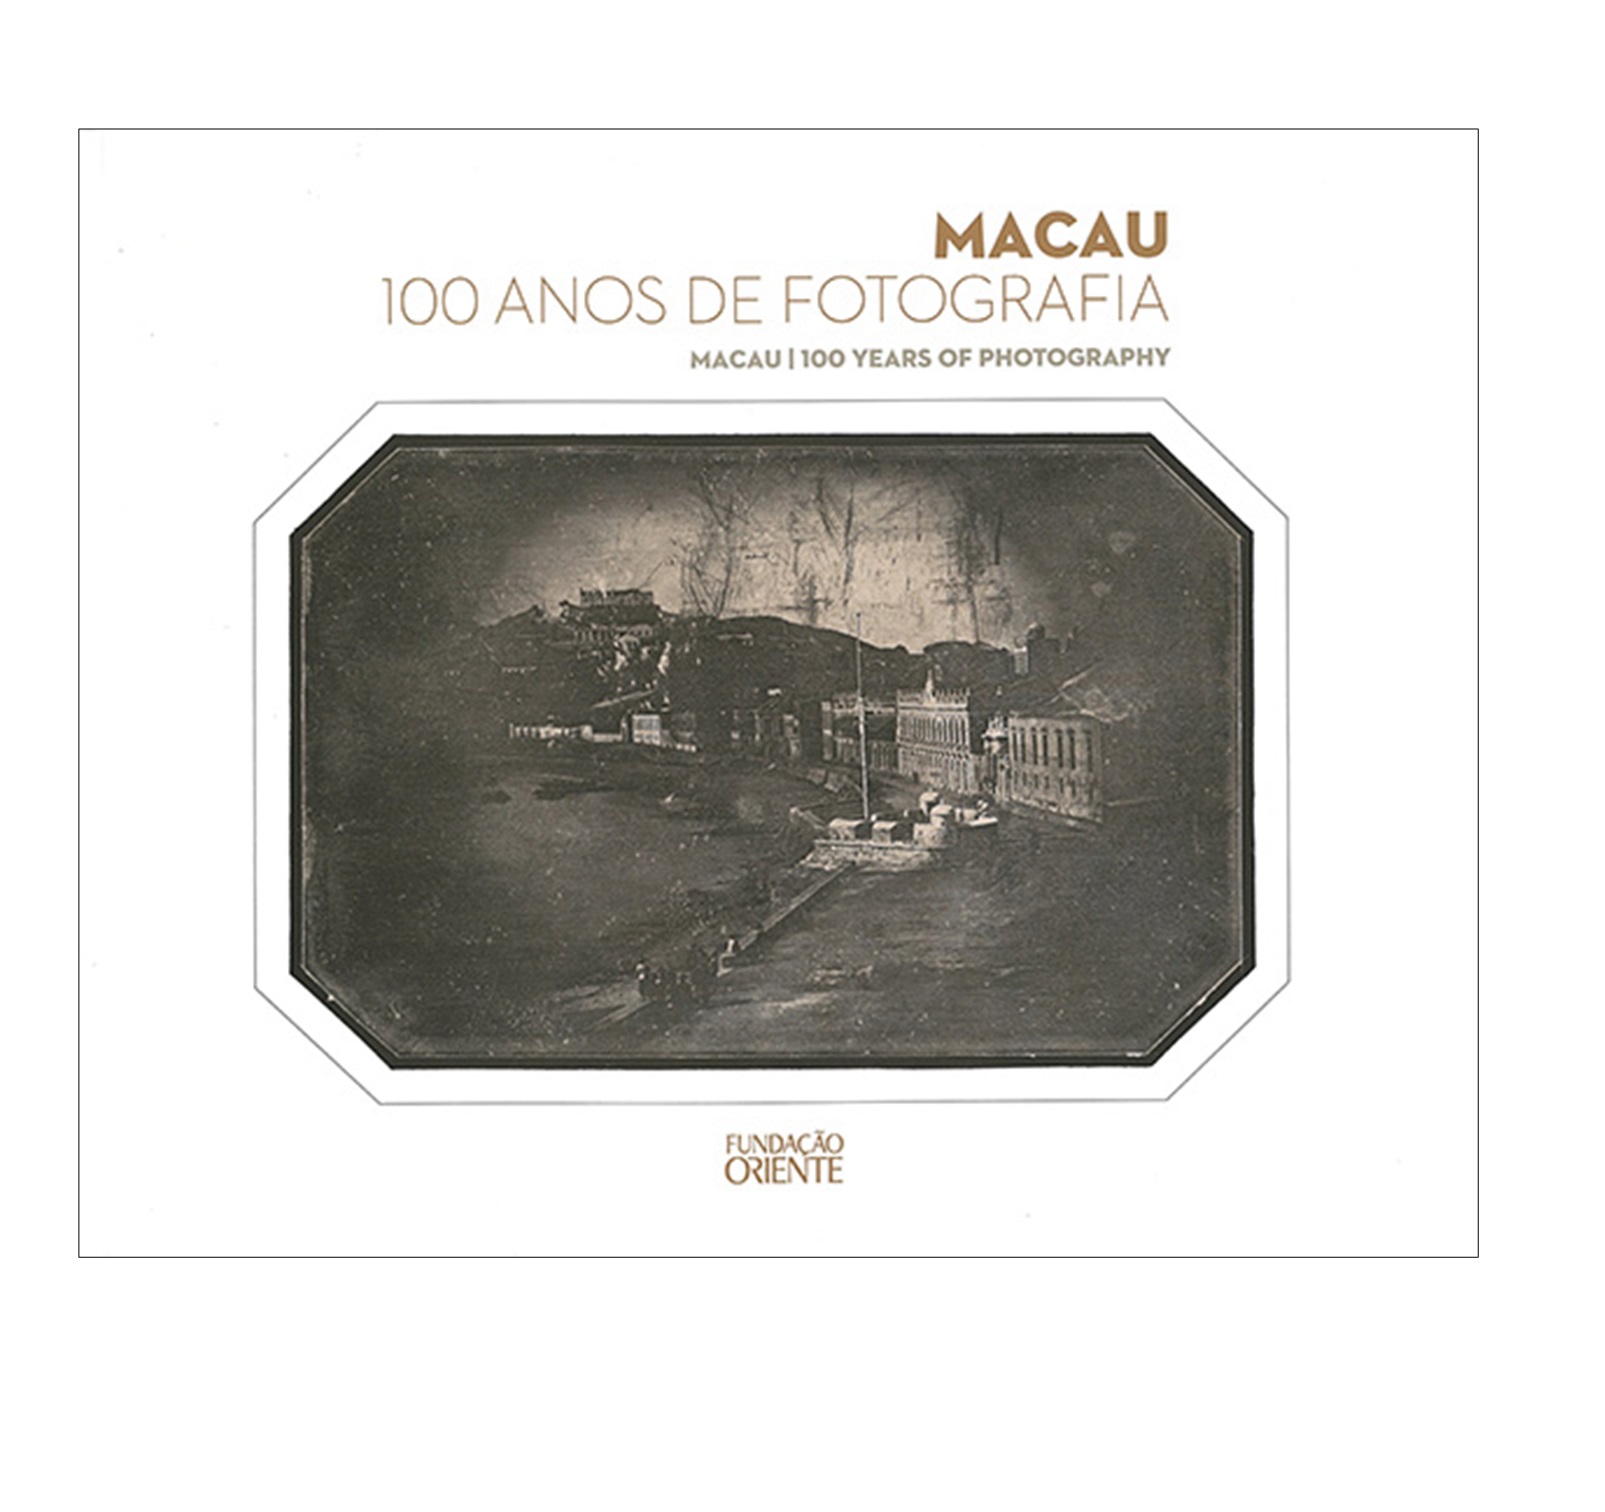 MACAU, 100 ANOS DE FOTOGRAFIA